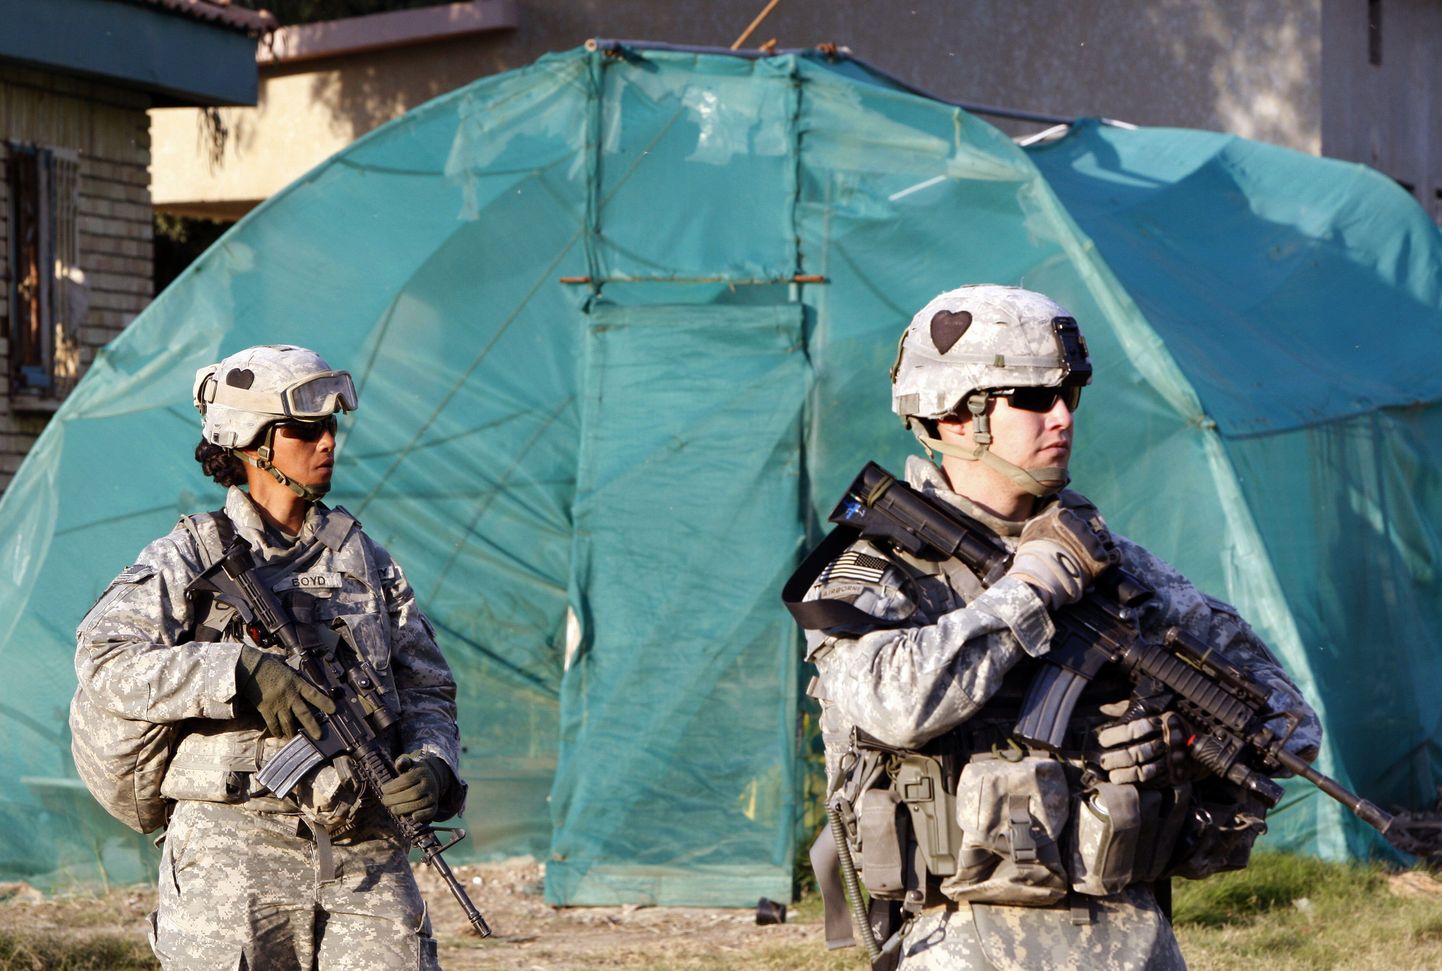 USA sõdurid Iraagis